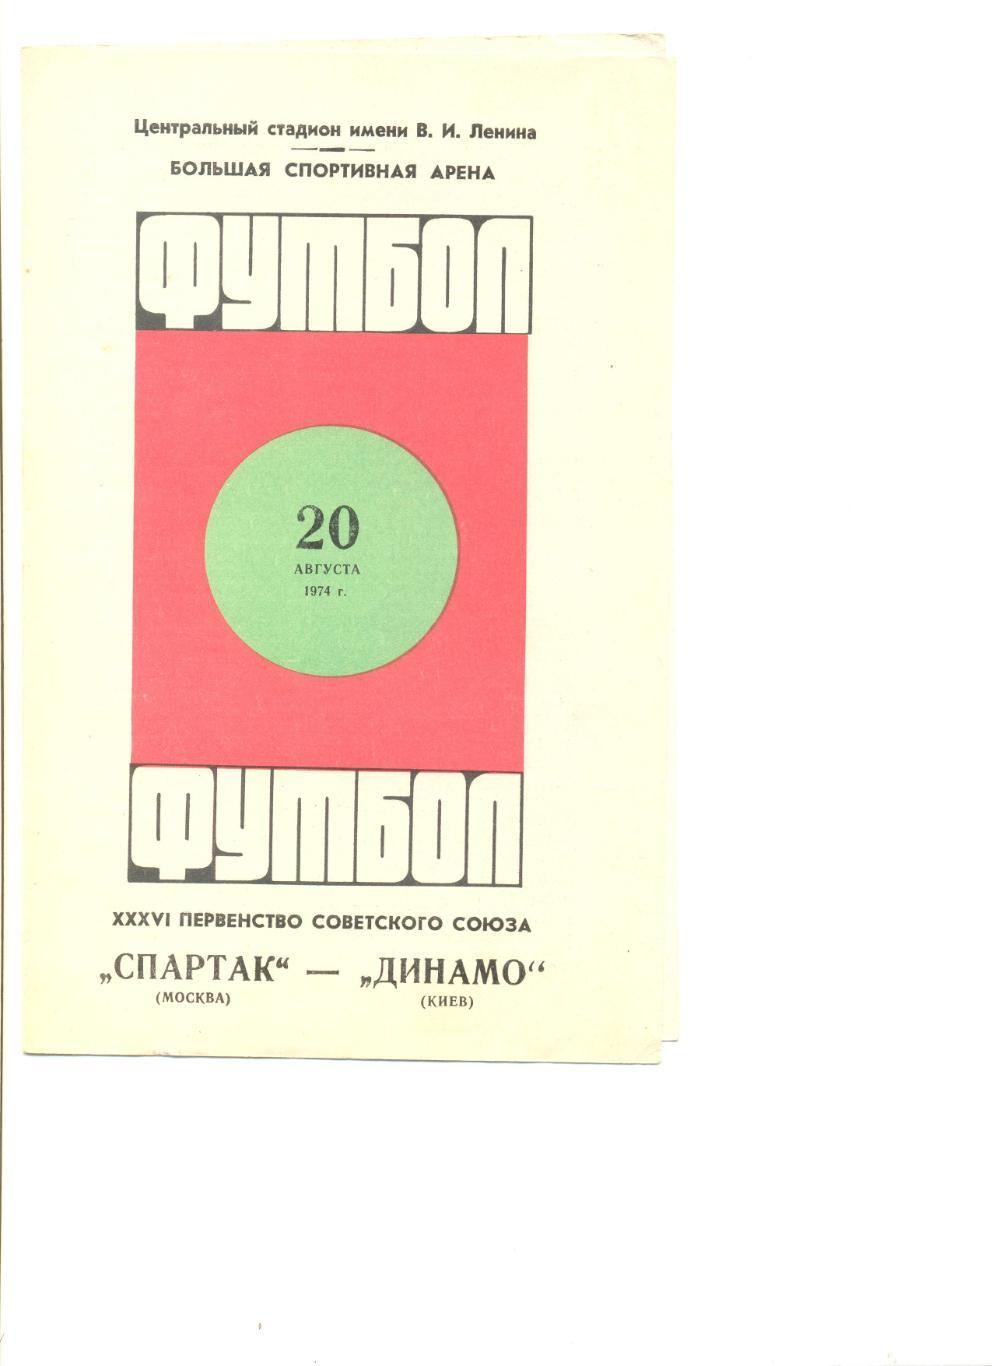 Спартак Москва - Динамо Киев 20.08.1974 г. 1